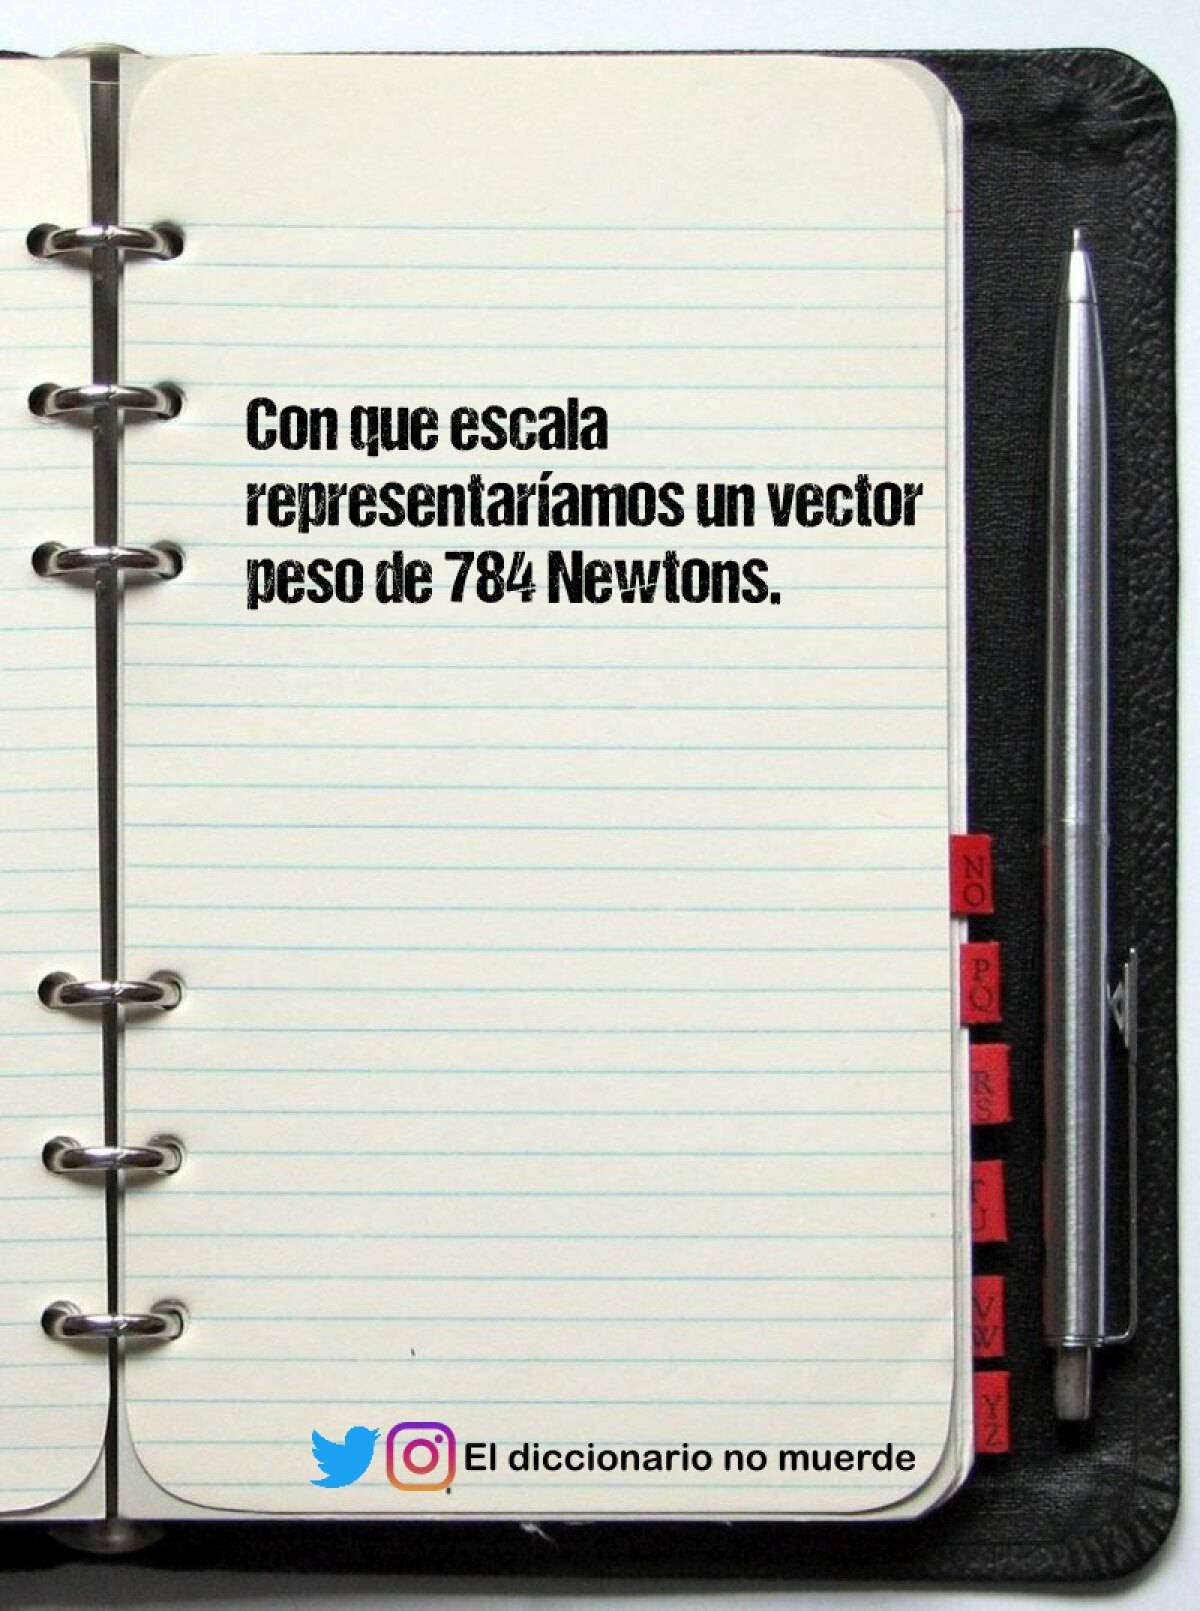 Con que escala representaríamos un vector peso de 784 Newtons.